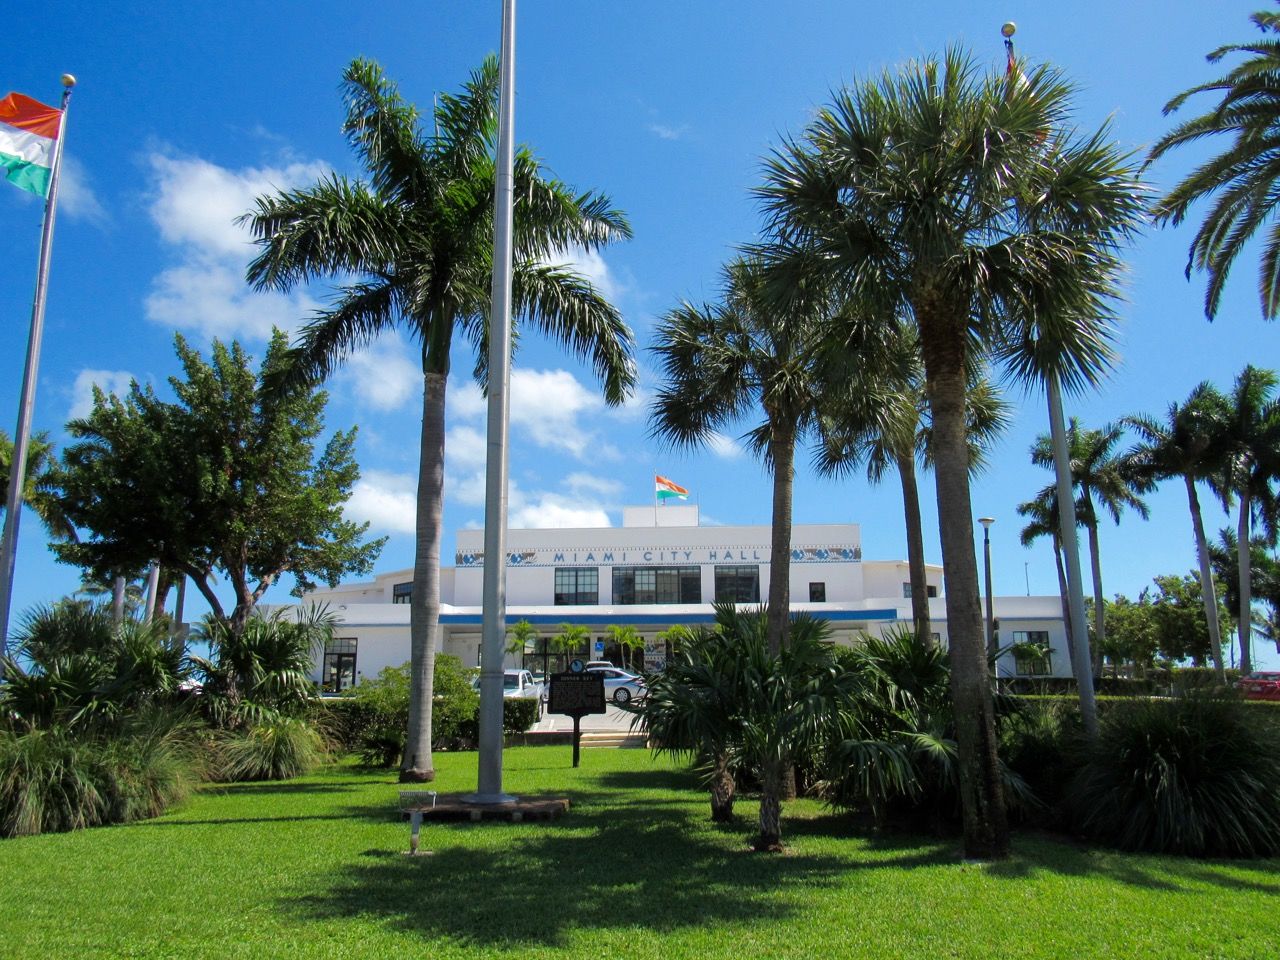 L'Hôtel de Ville de Miami dans le quartier de Coconut Grove.